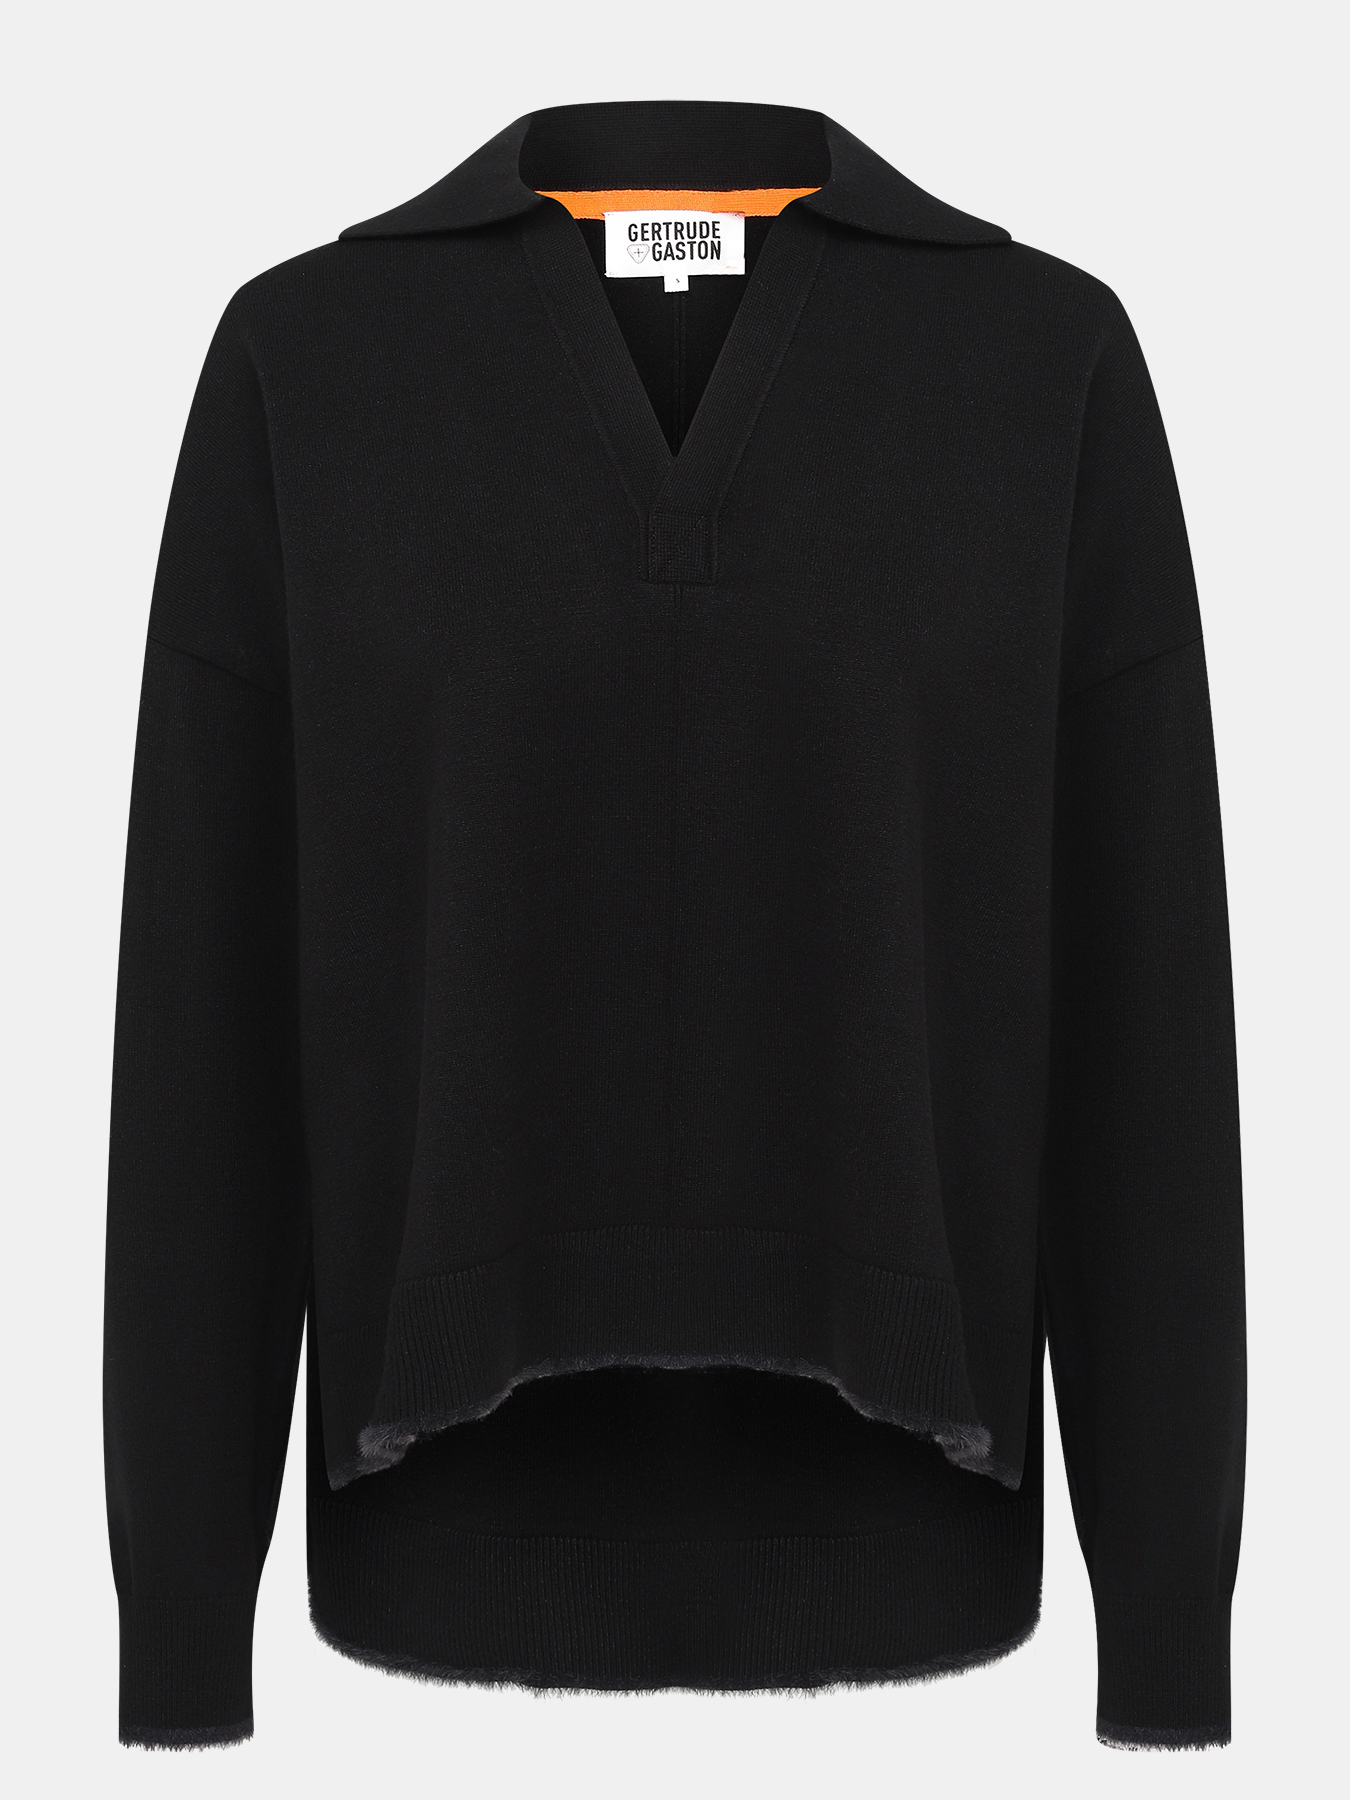 Пуловер Gertrude+Gaston 429302-043, цвет черный, размер 44-46 - фото 1